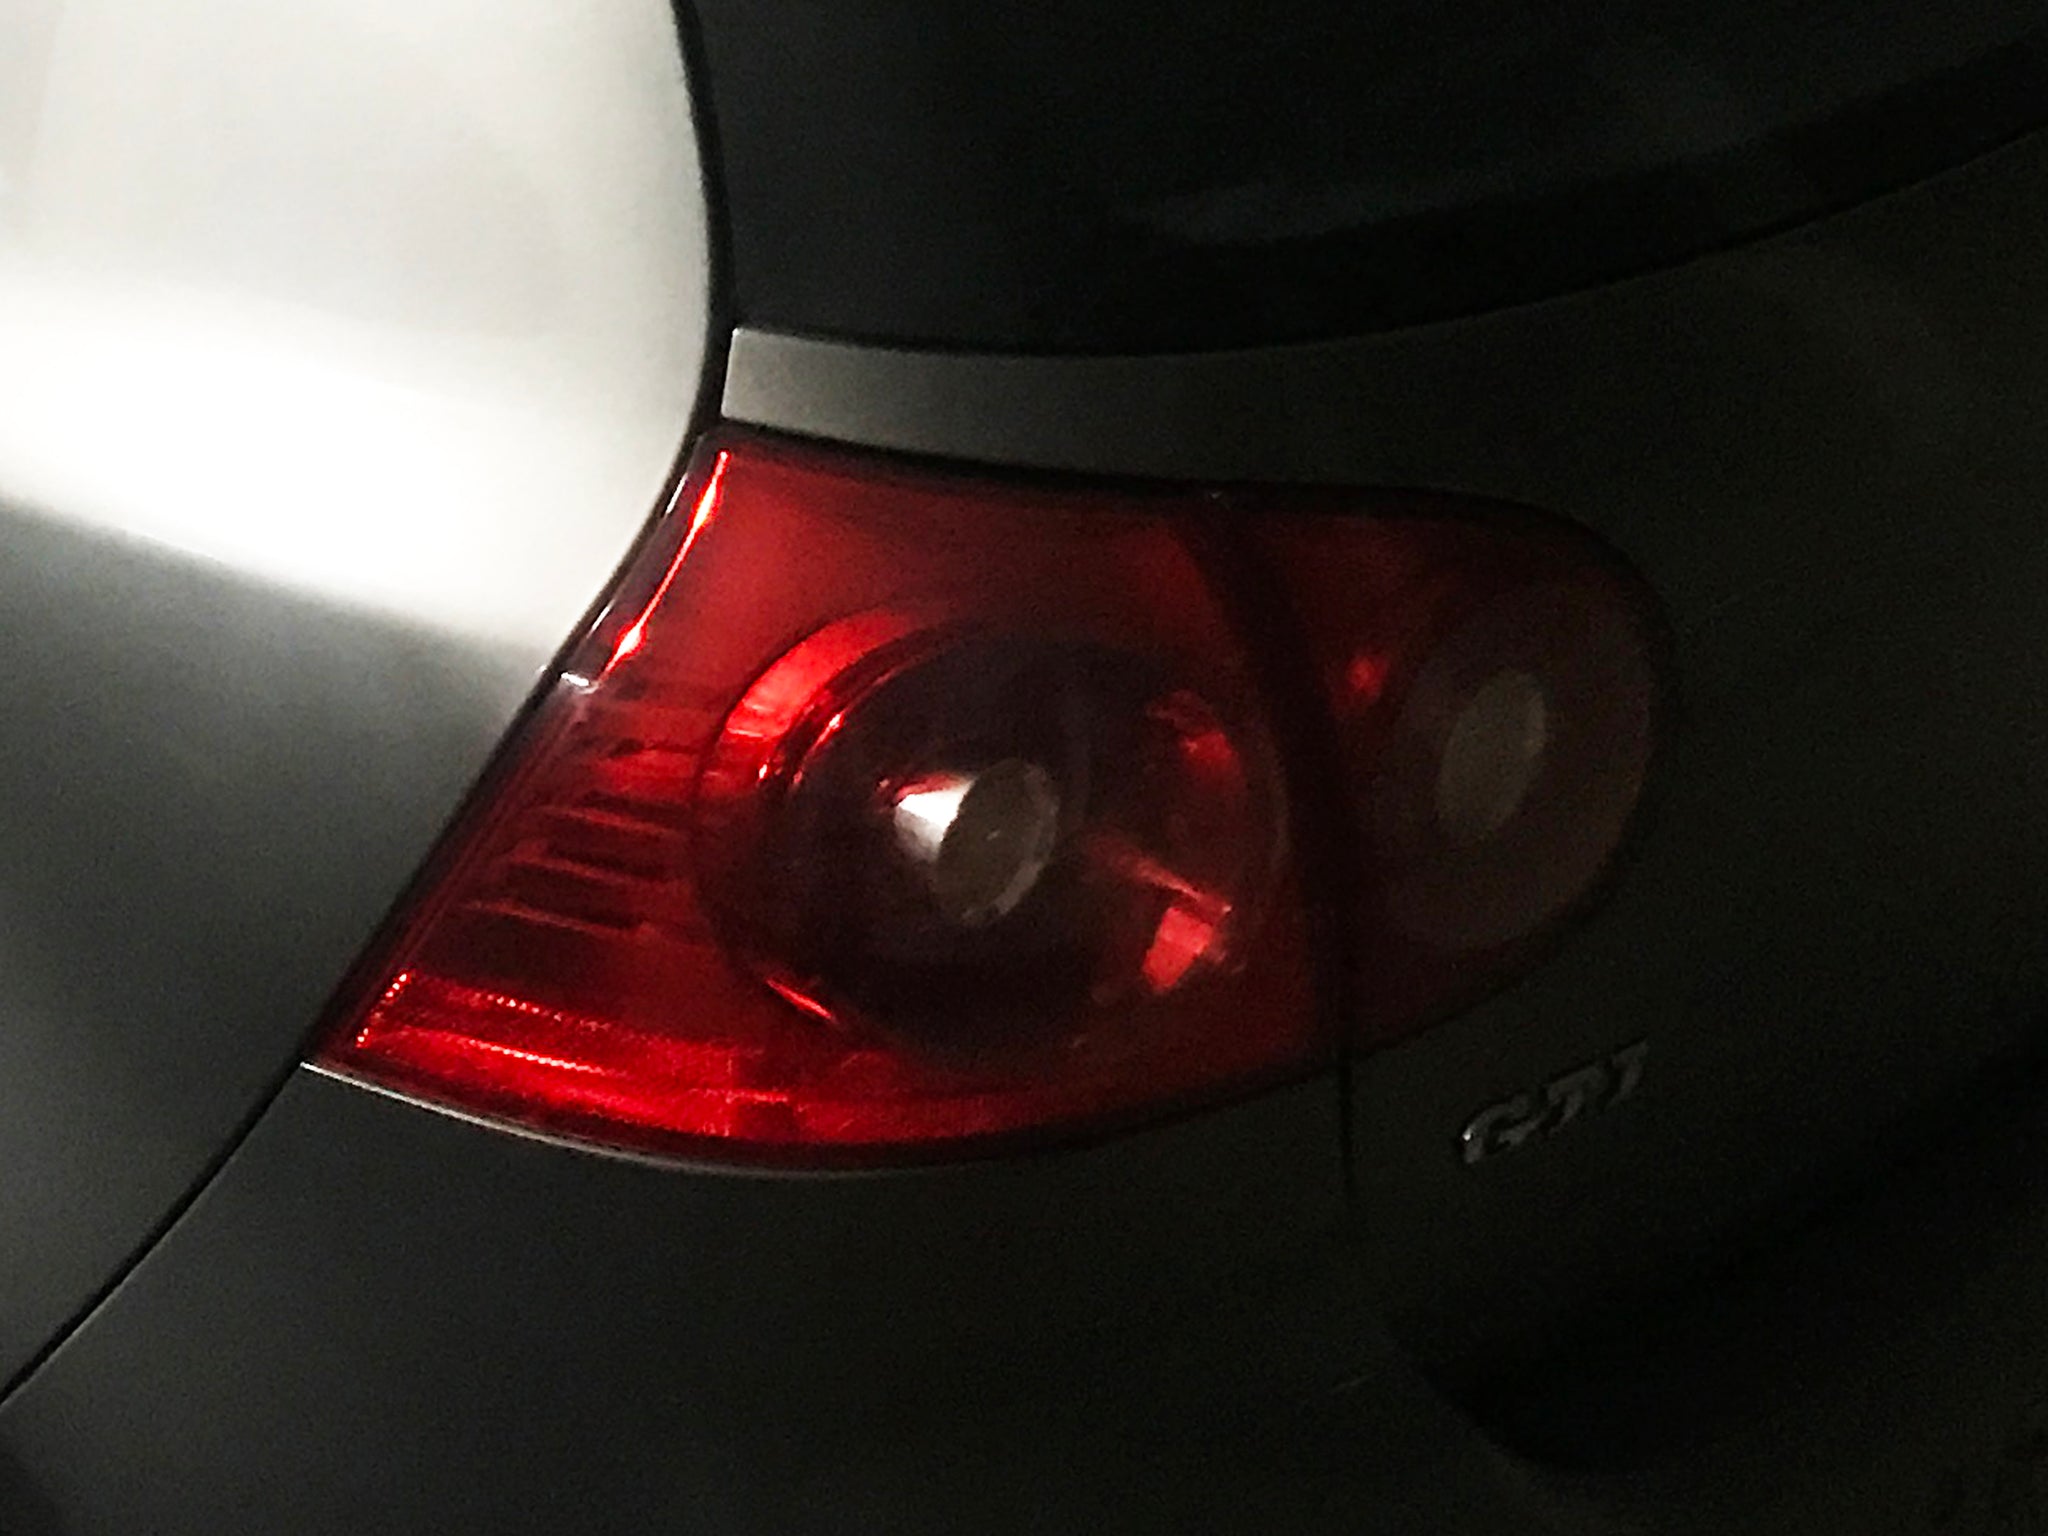 VW GOLF GTI MK5 - REAR LIGHTS